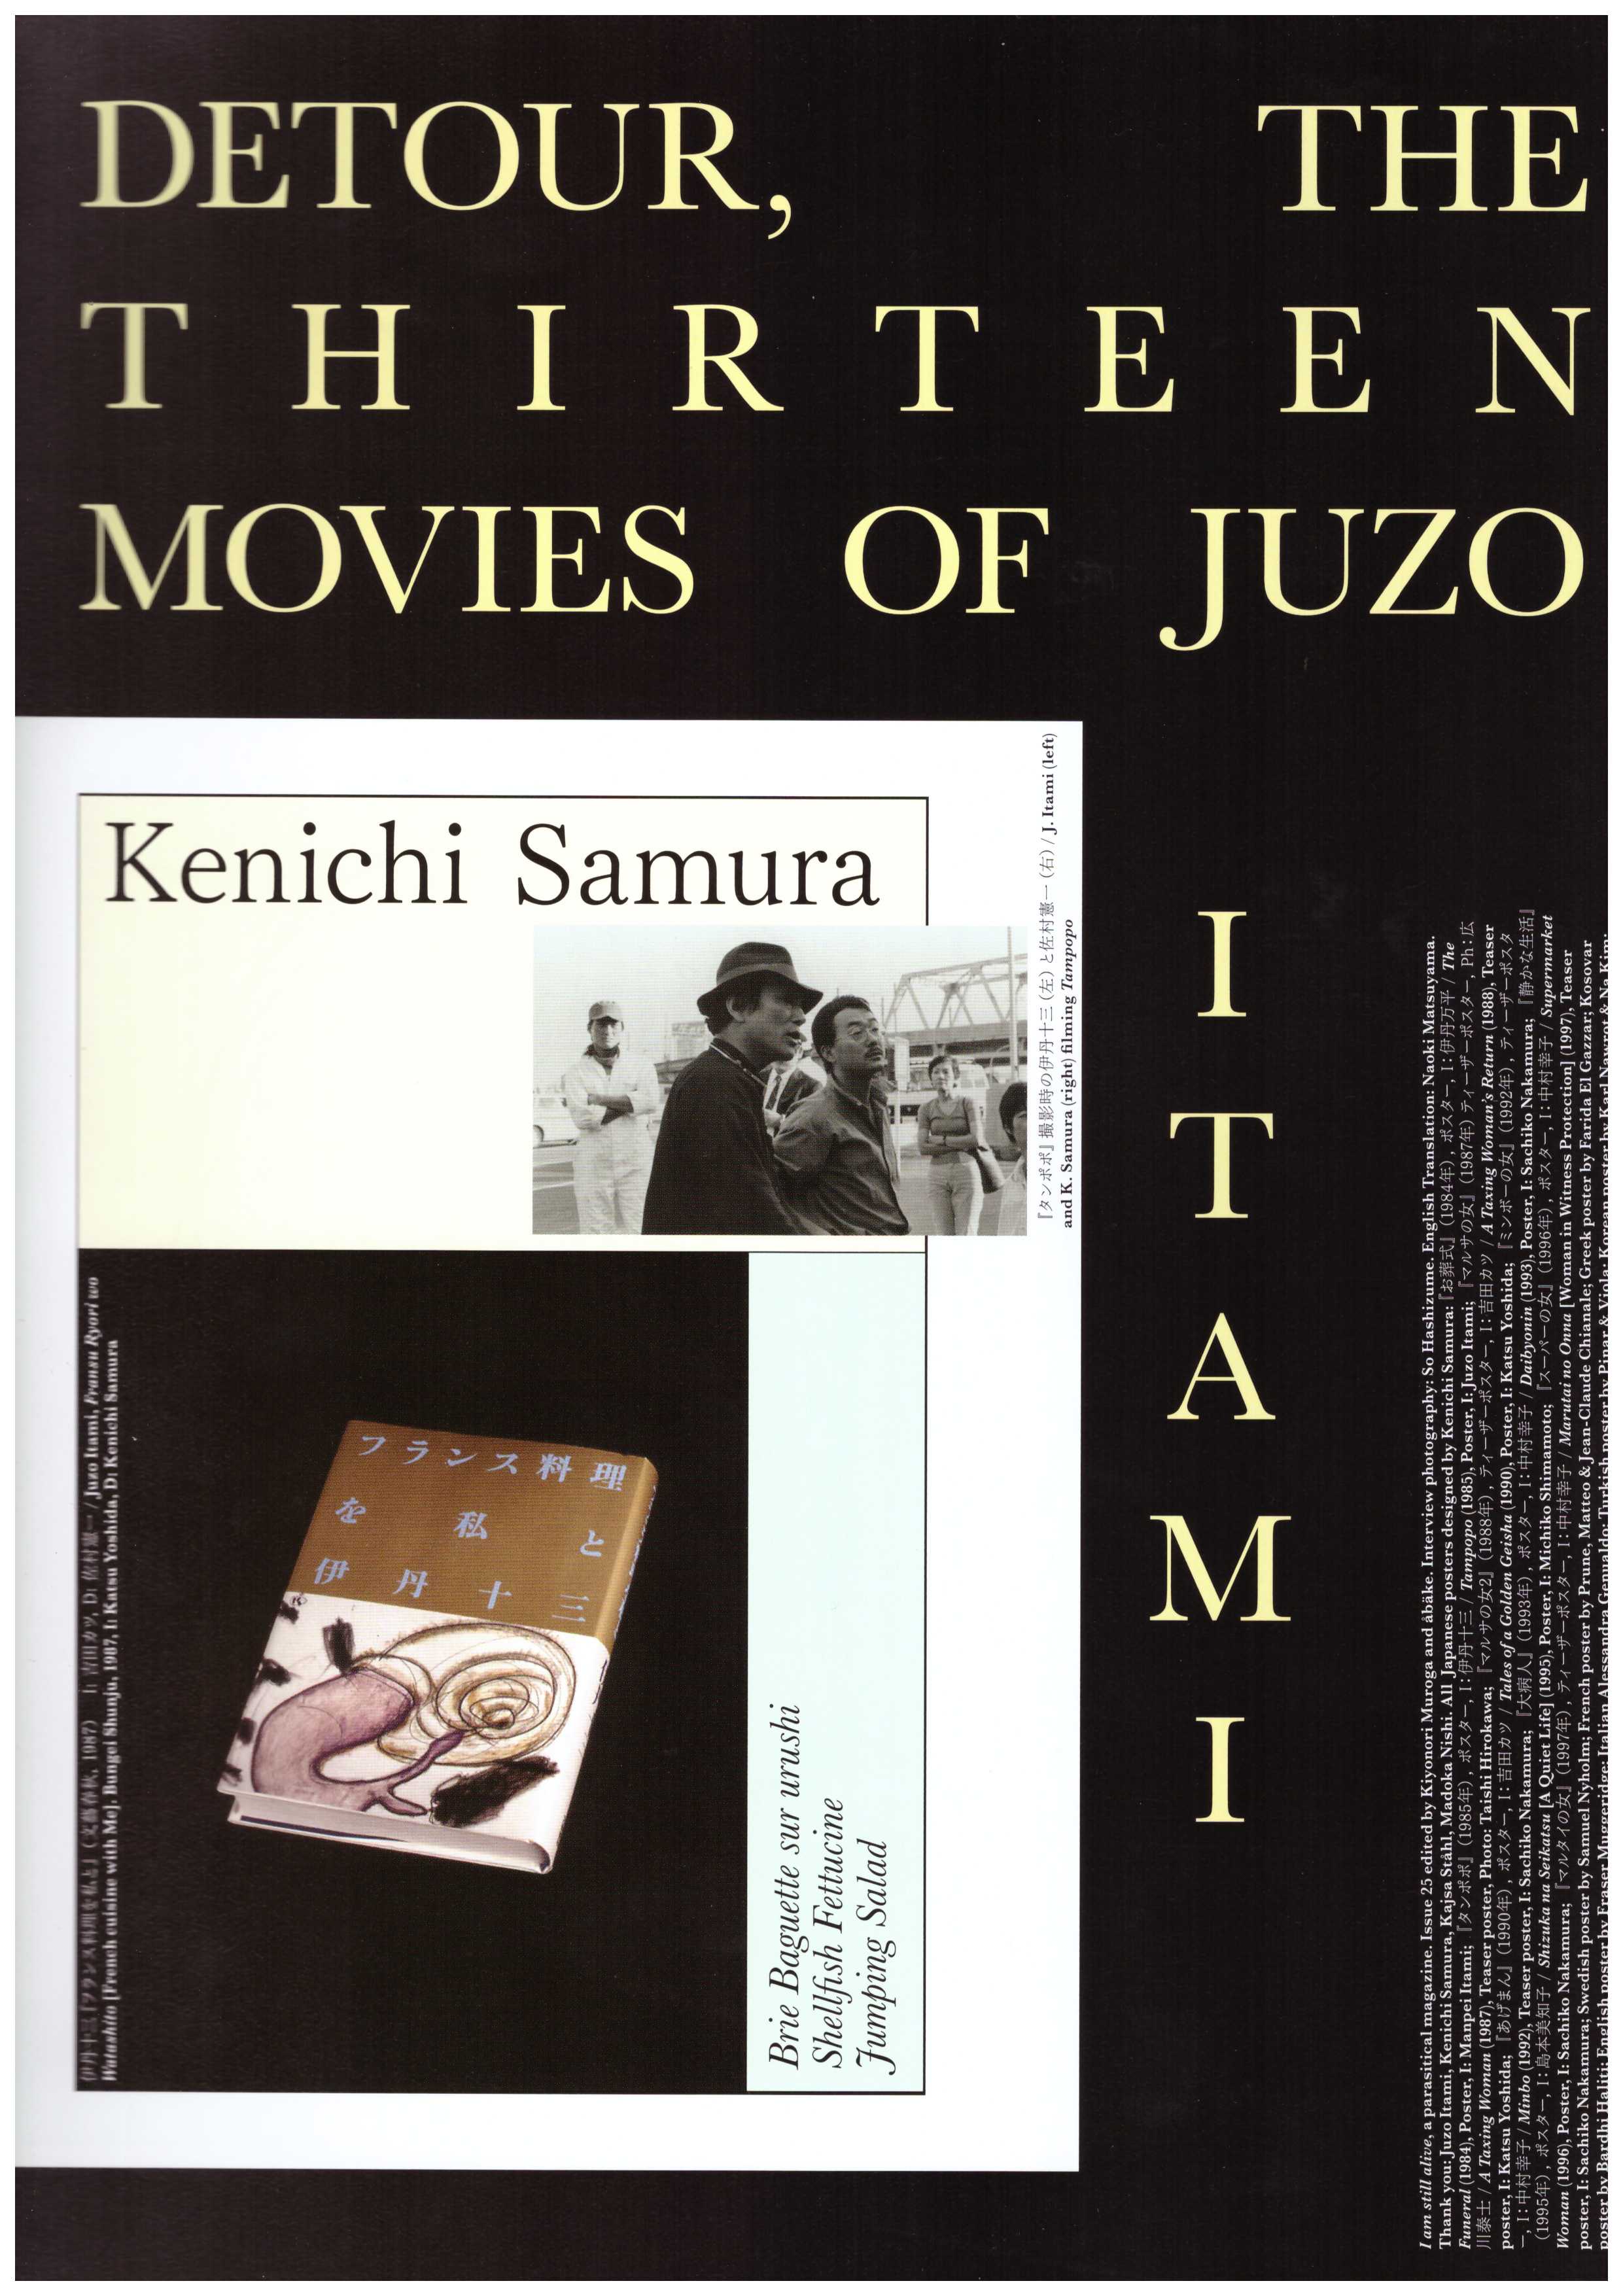 ÅBÄKE; MUROGA, Kiyonori (eds.) - Detour, the thirteen movies of Juzo Itami